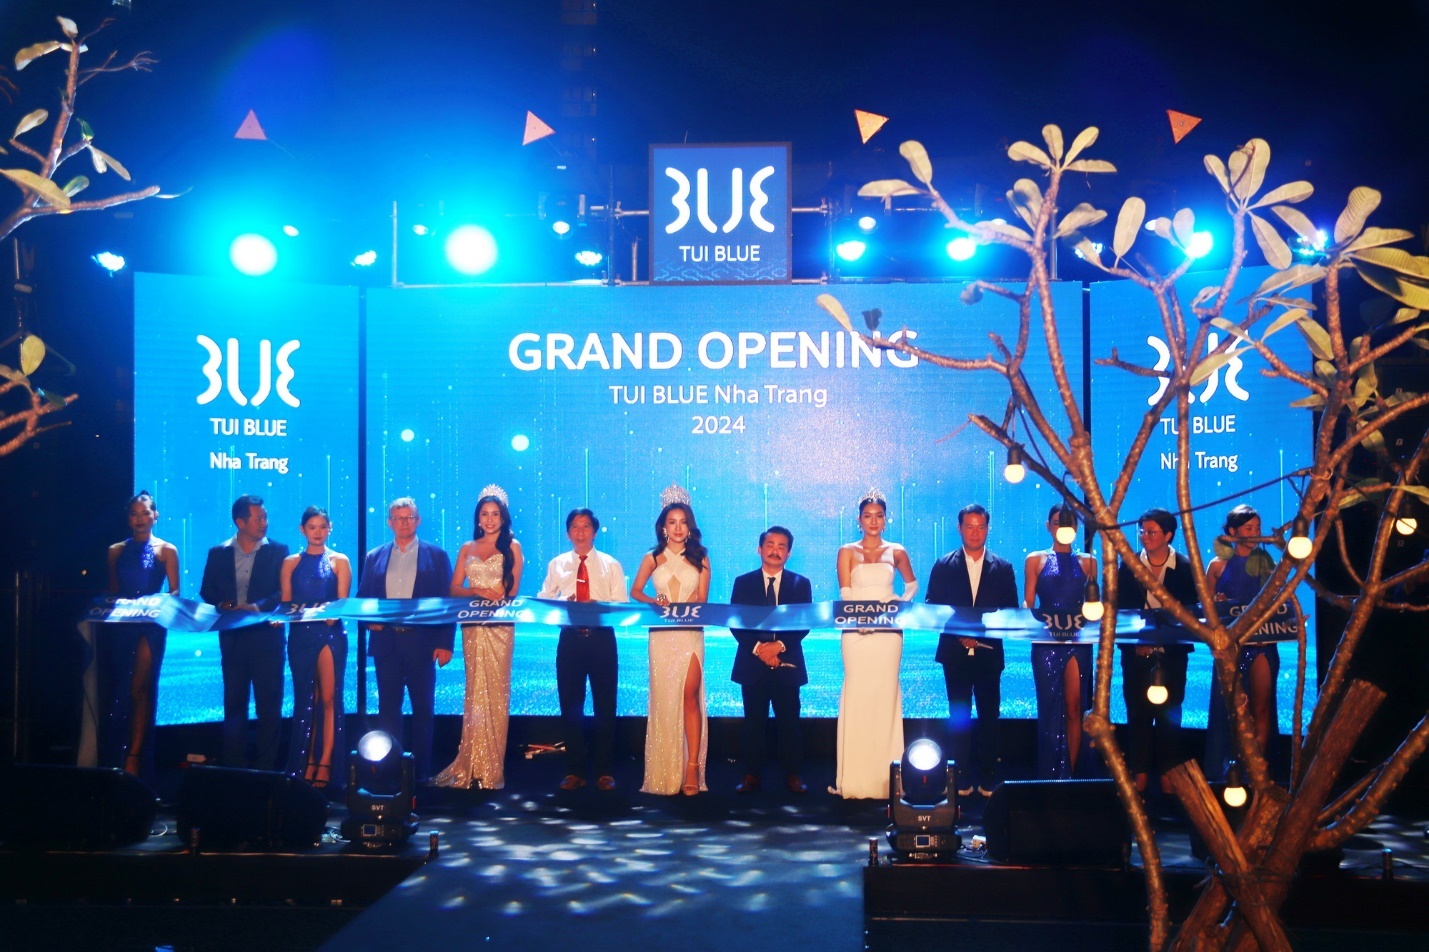 Khai trương khách sạn mang thương hiệu TUI BLUE tại Nha Trang